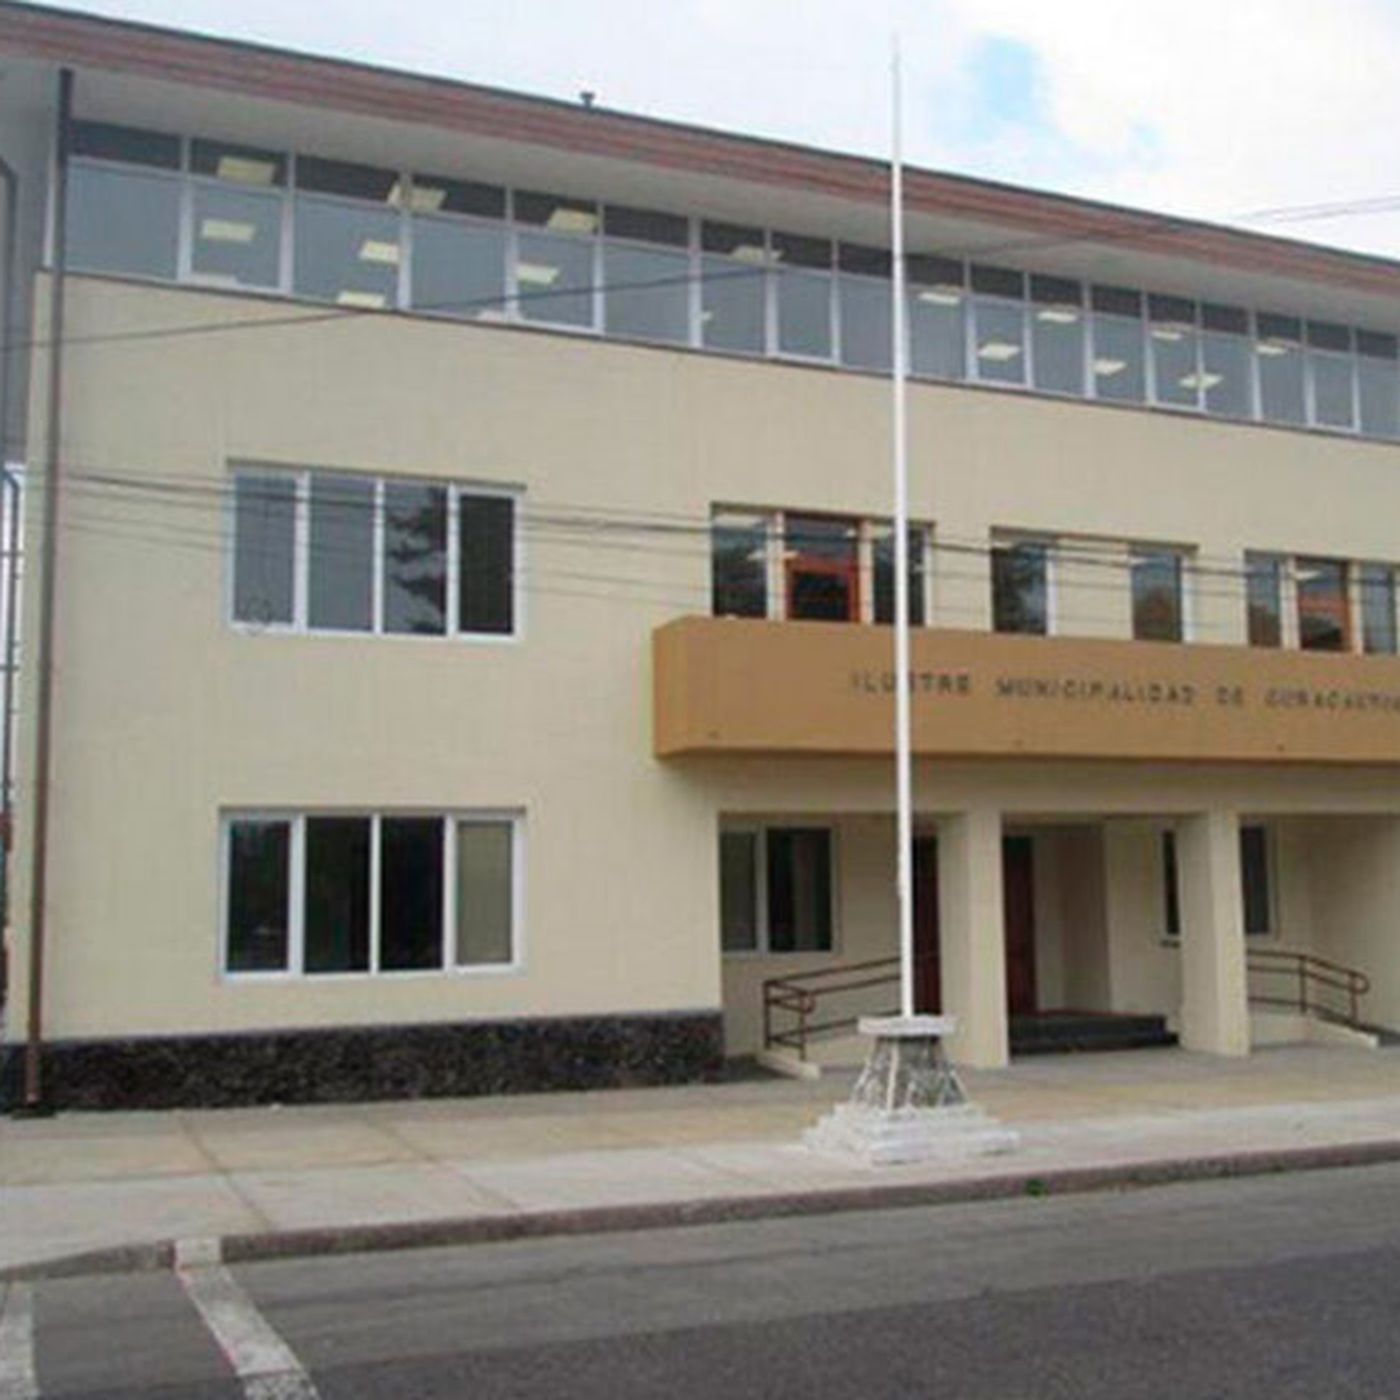 Desvinculan a condenado por delitos de lesa humanidad que dirigía escuela rural en Curacautín